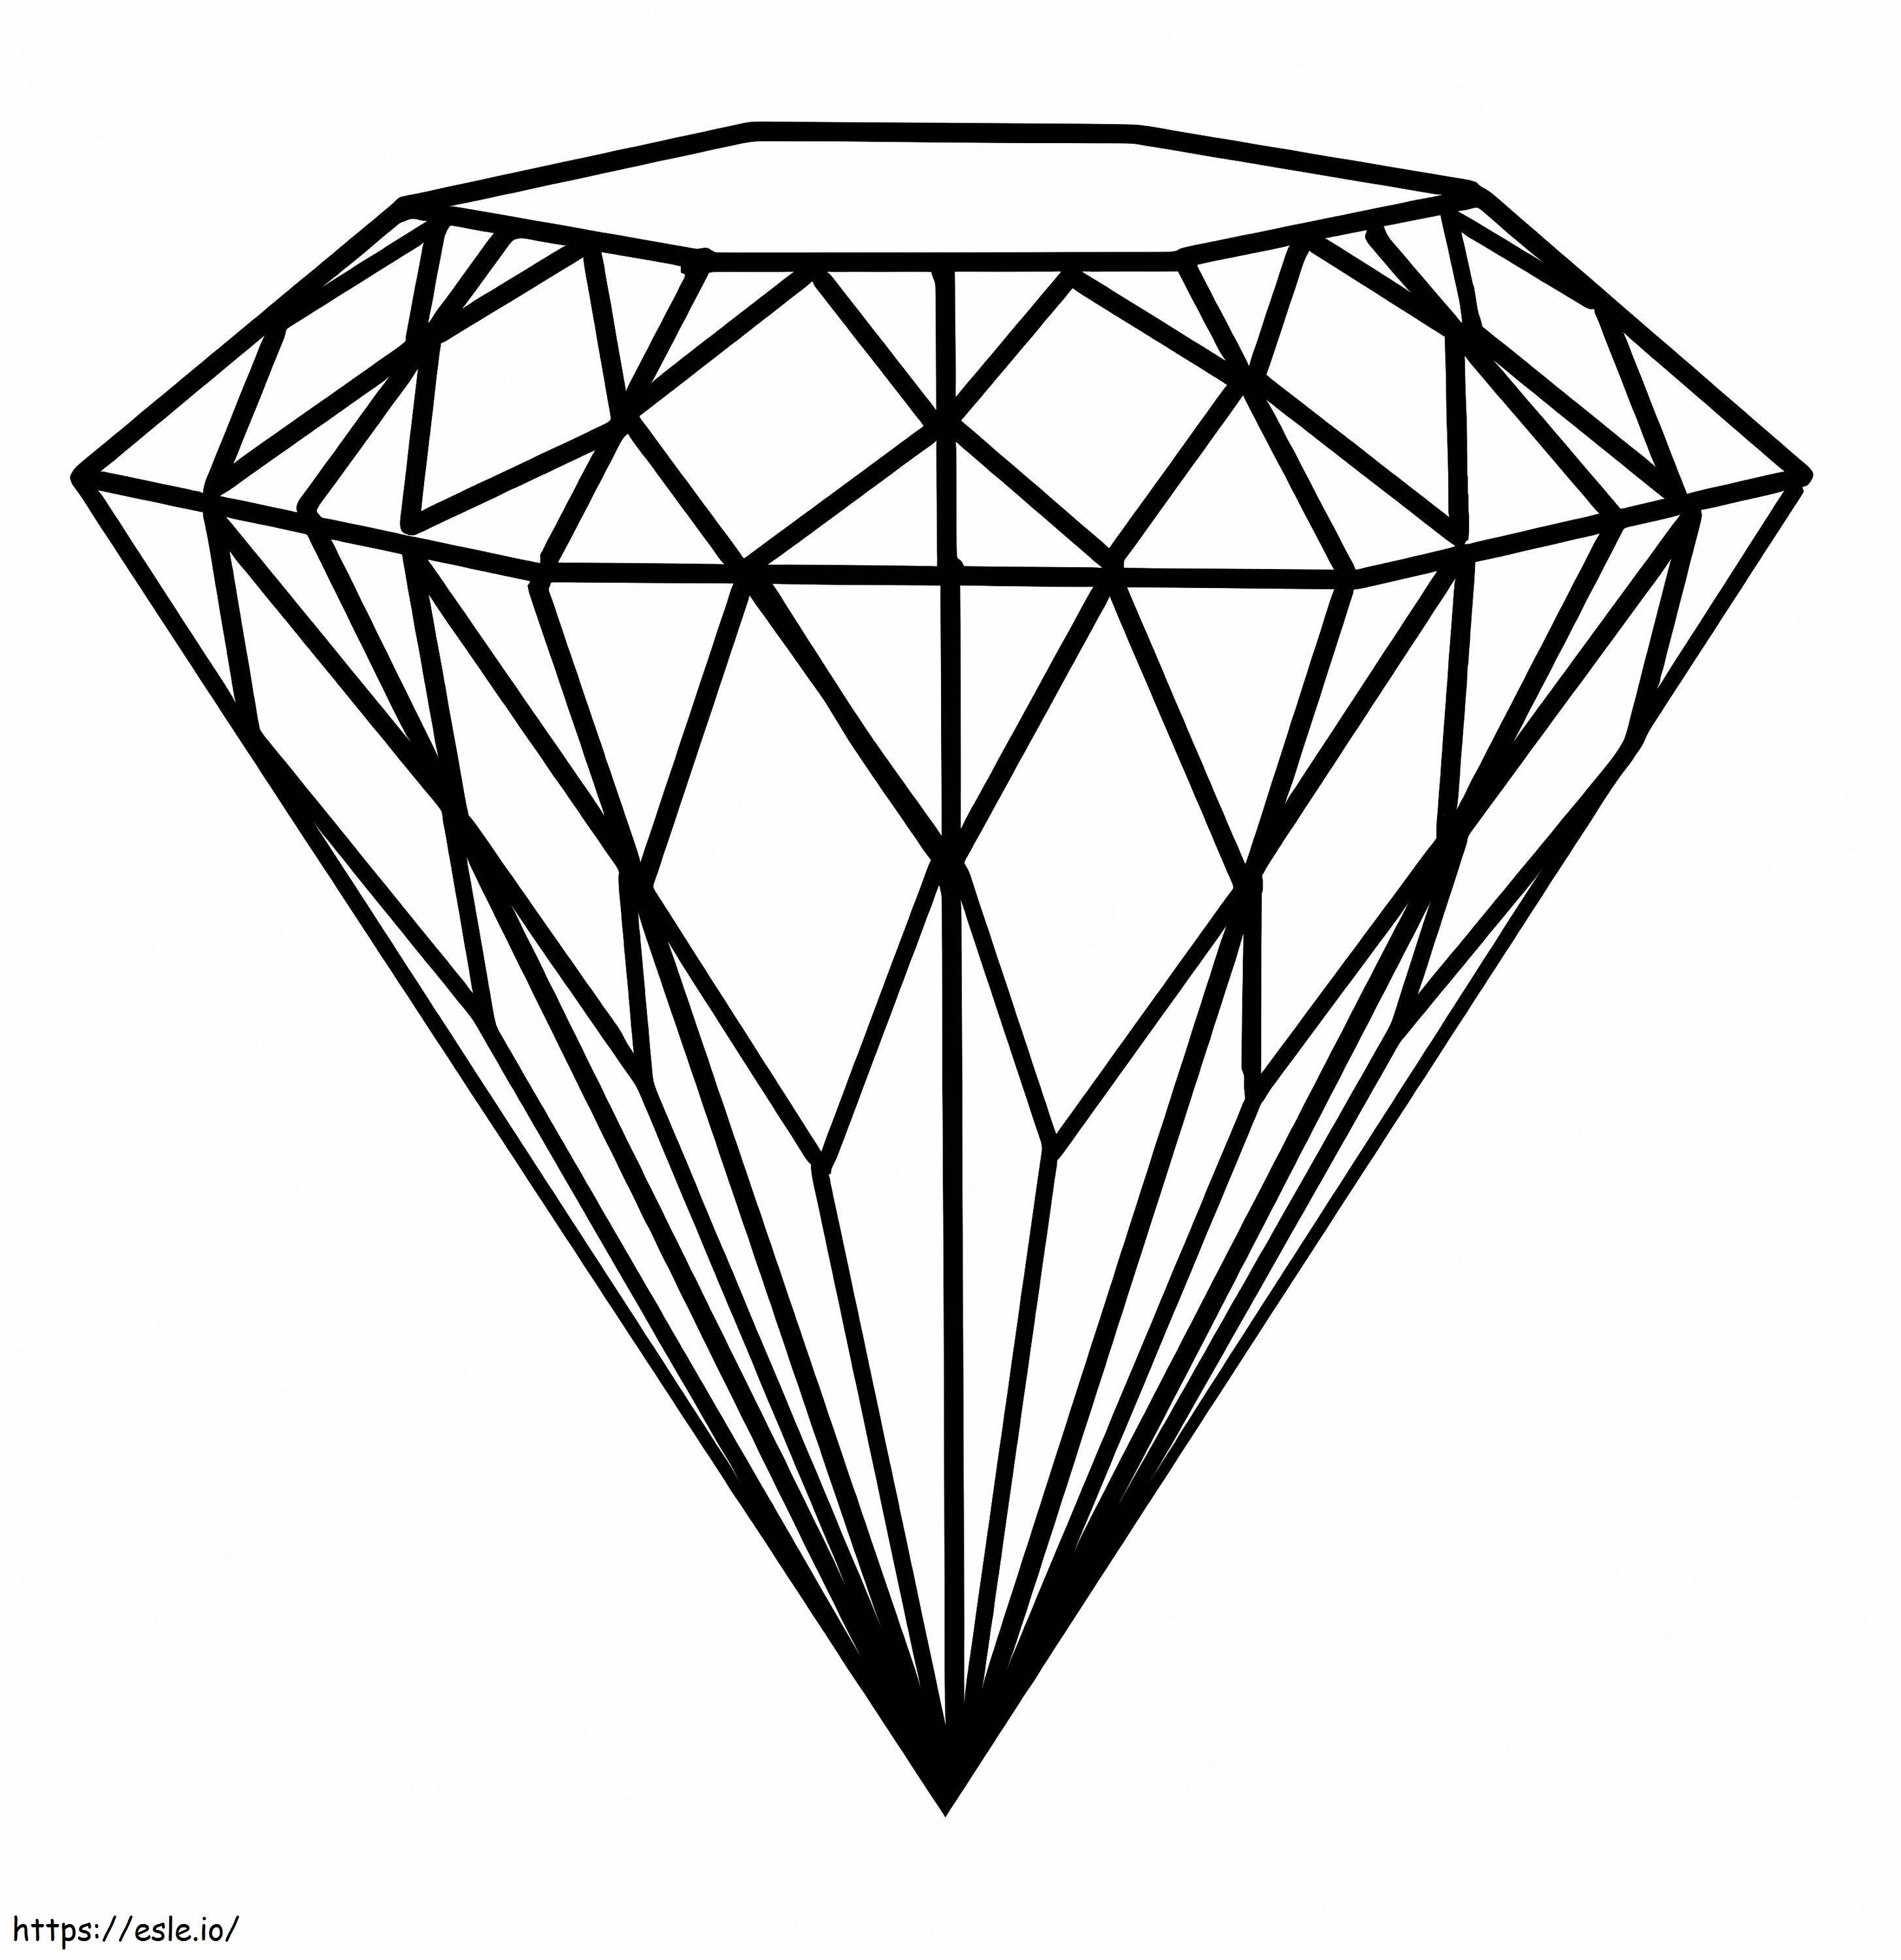 Großer Diamant ausmalbilder